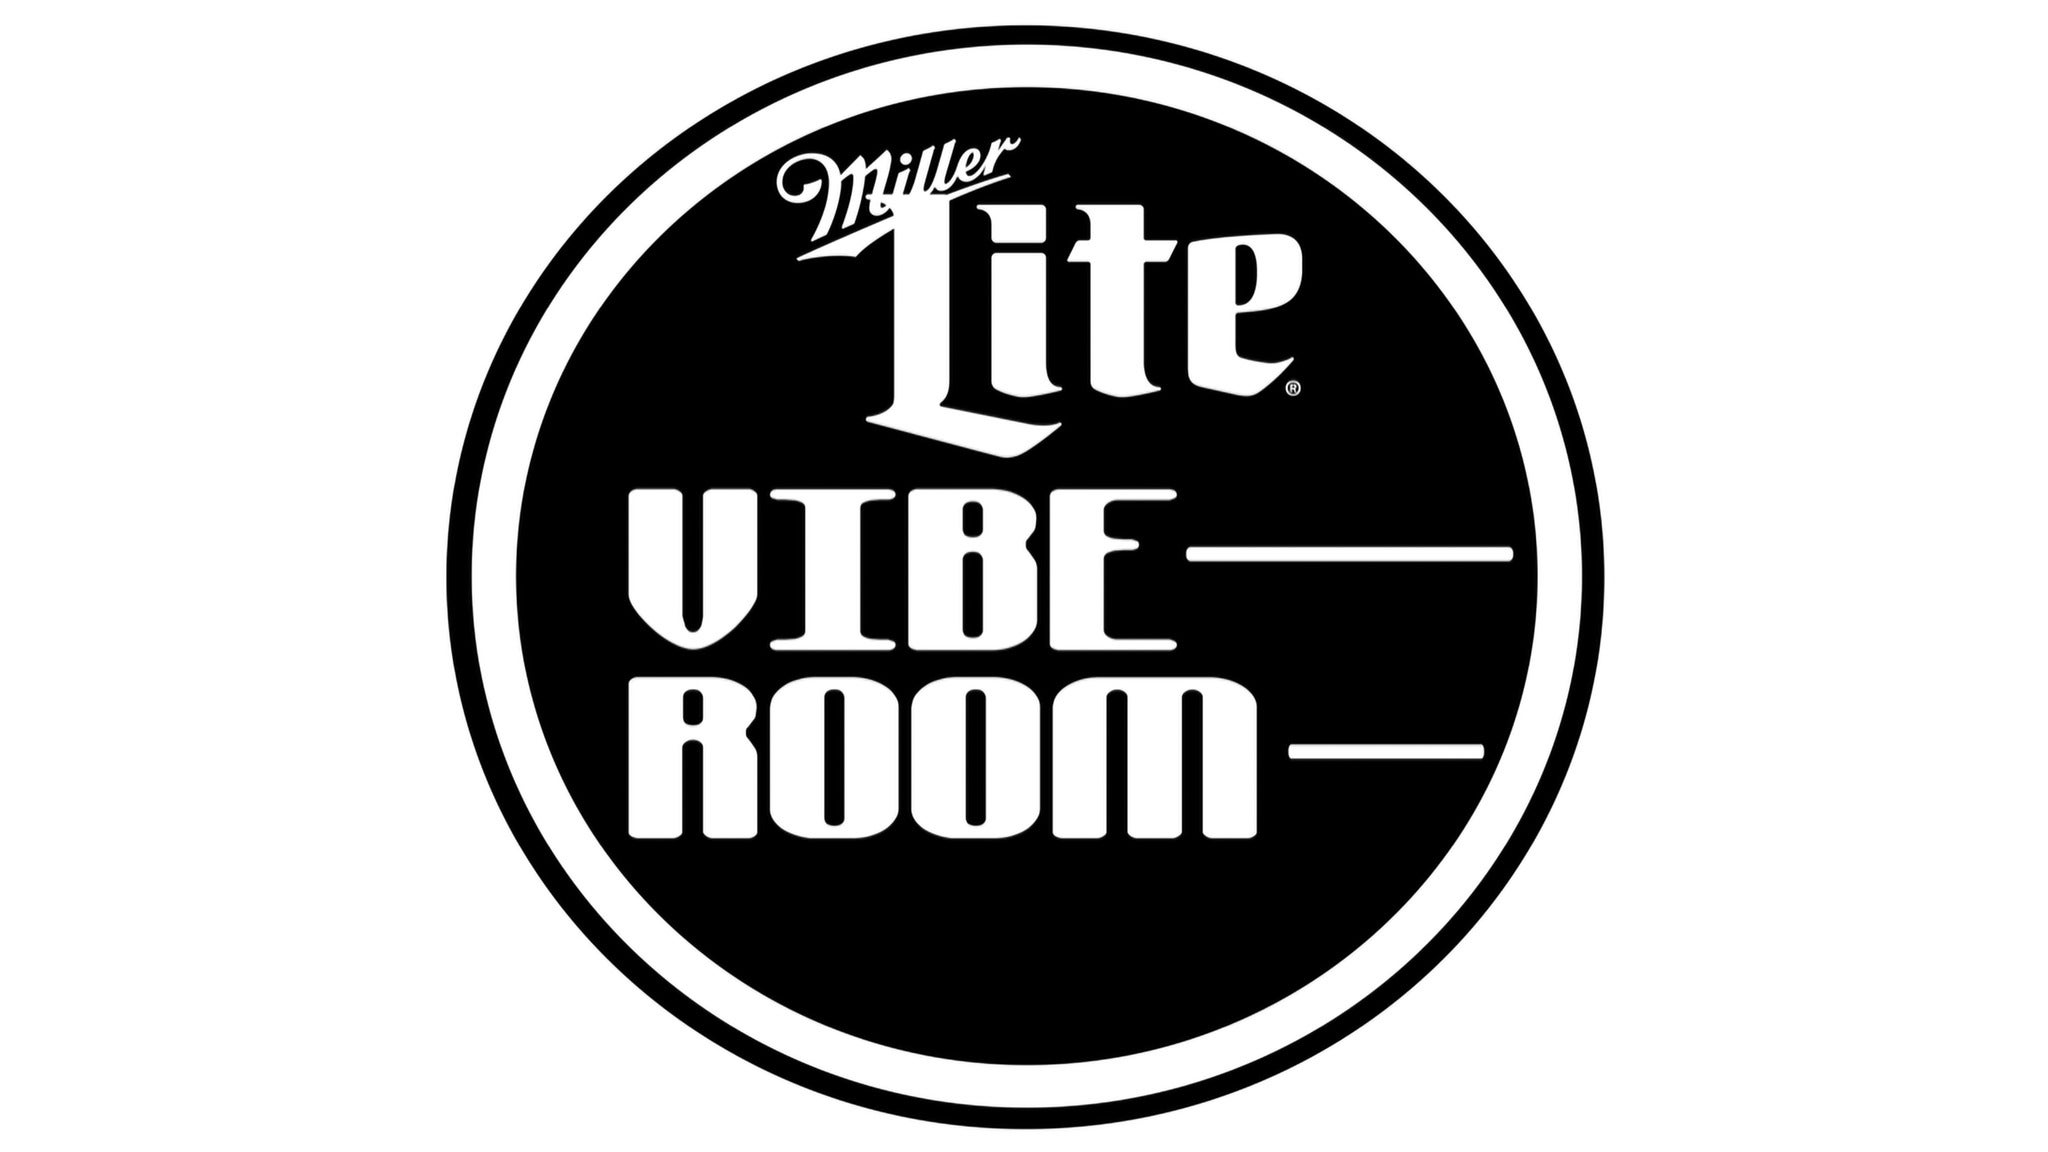 Miller Lite Vibe Room presale information on freepresalepasswords.com